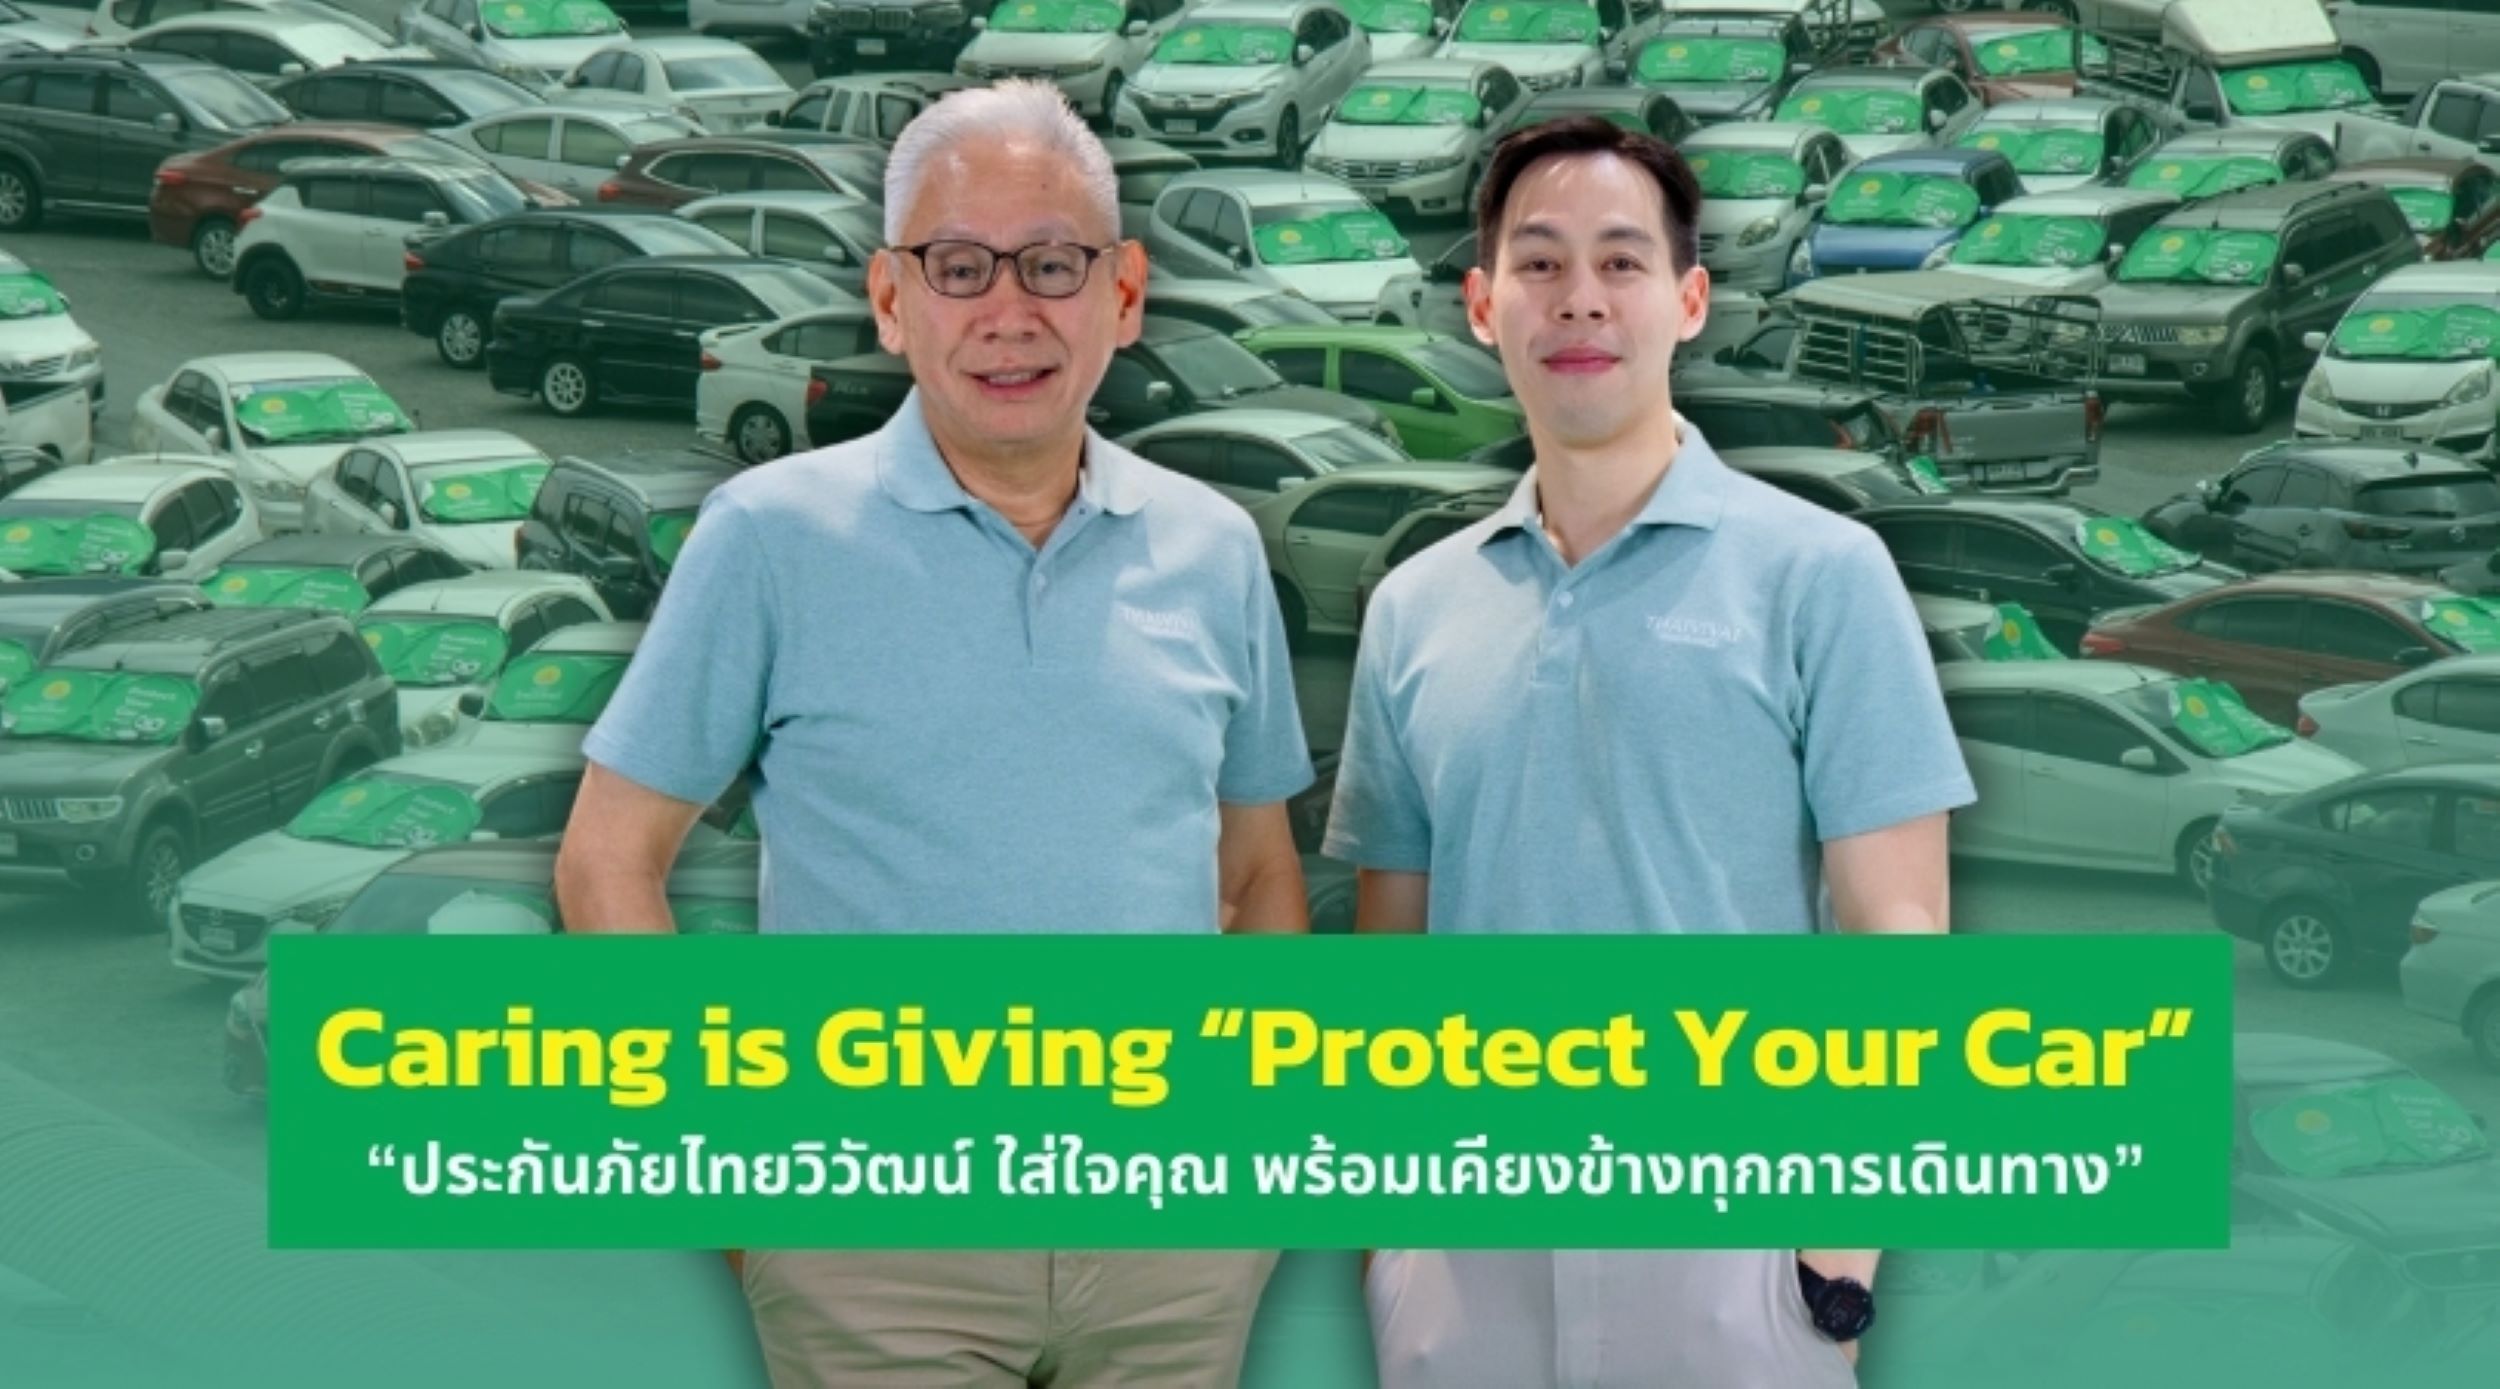 Caring is Giving “Protect Your Car” “ประกันภัยไทยวิวัฒน์ ใส่ใจคุณ พร้อมเคียงข้างทุกการเดินทาง” ชวนลดความเสี่ยง ปกป้องรถที่คุณรักอย่างยั่งยืน สำนักพิมพ์แม่บ้าน